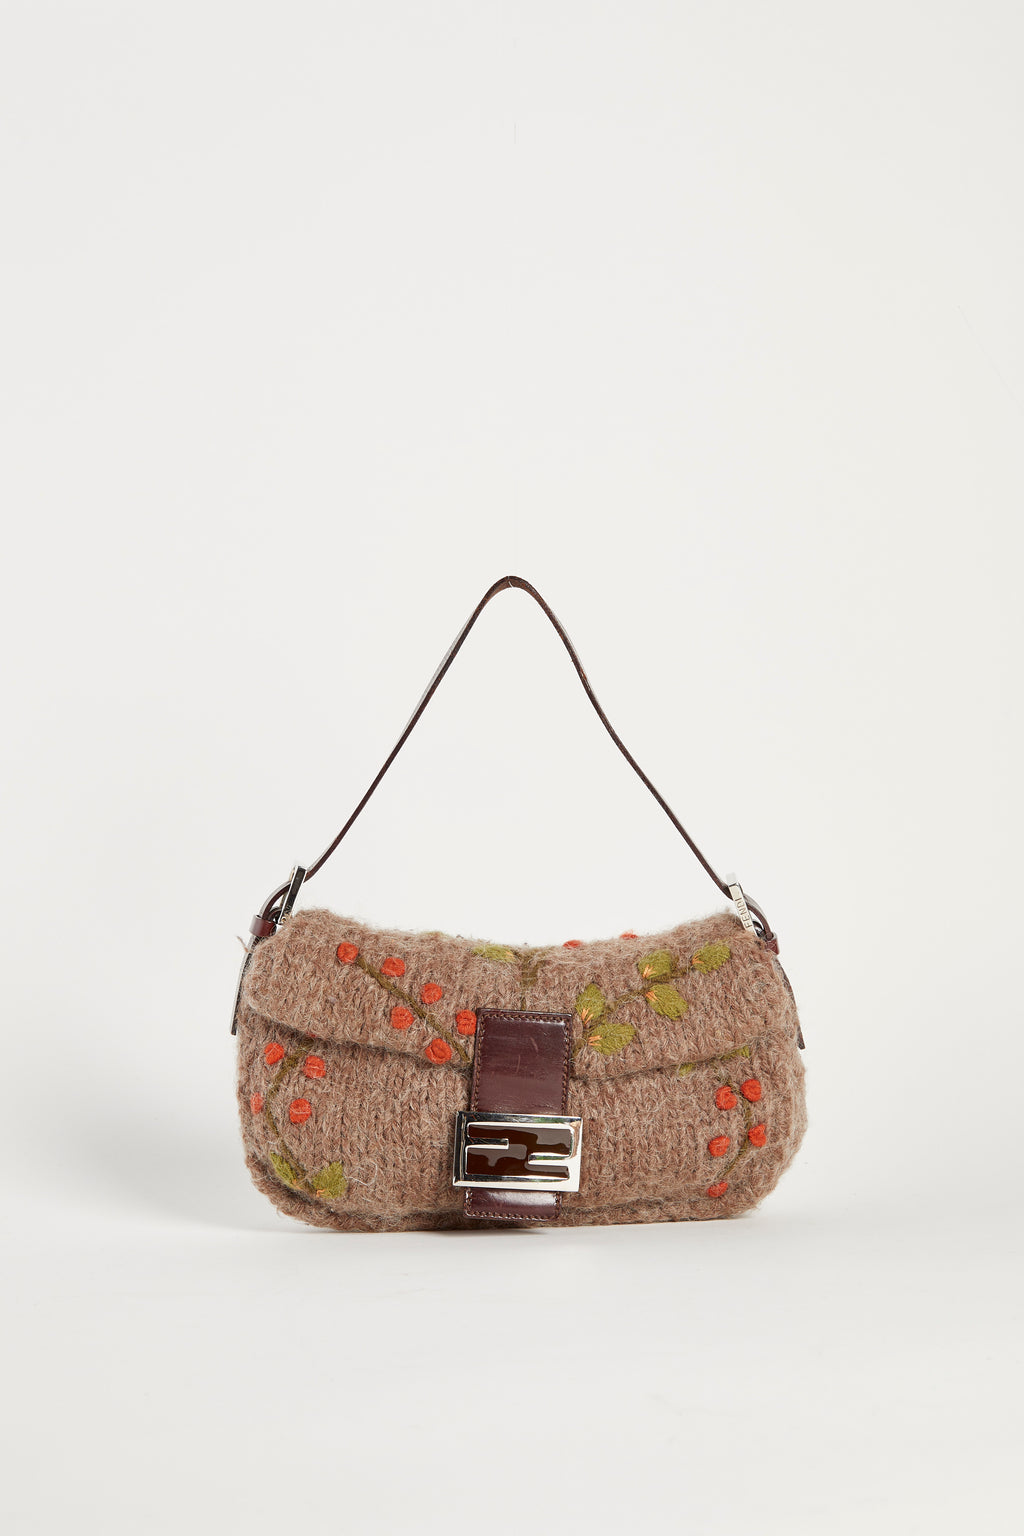 Vintage Fendi Knitted & Embroidered Baguette Shoulder Bag